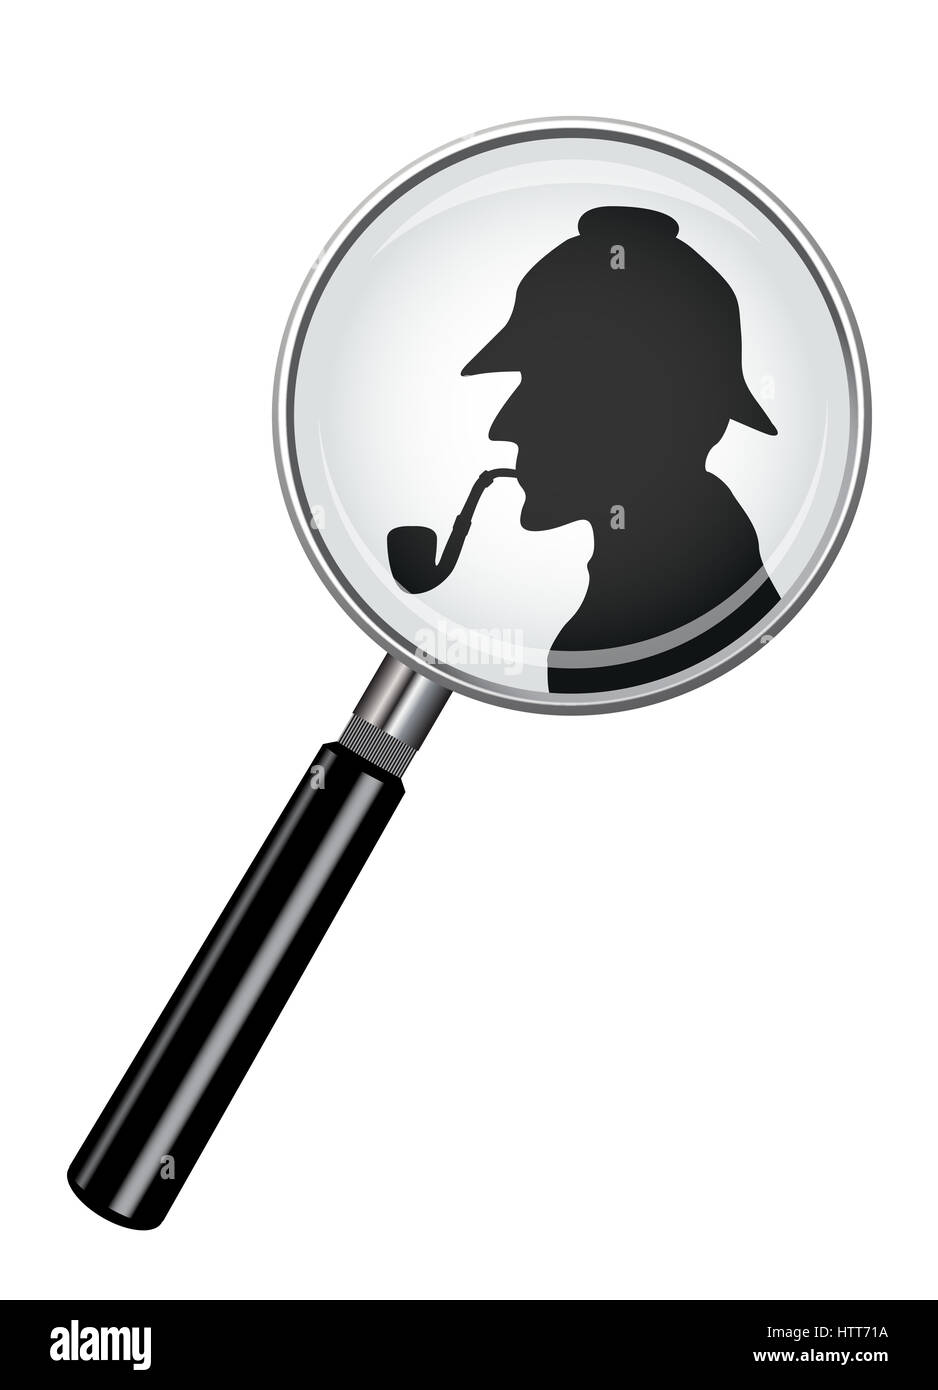 Une loupe réaliste design avec une silhouette de Sherlock Holmes isolé sur fond blanc Banque D'Images